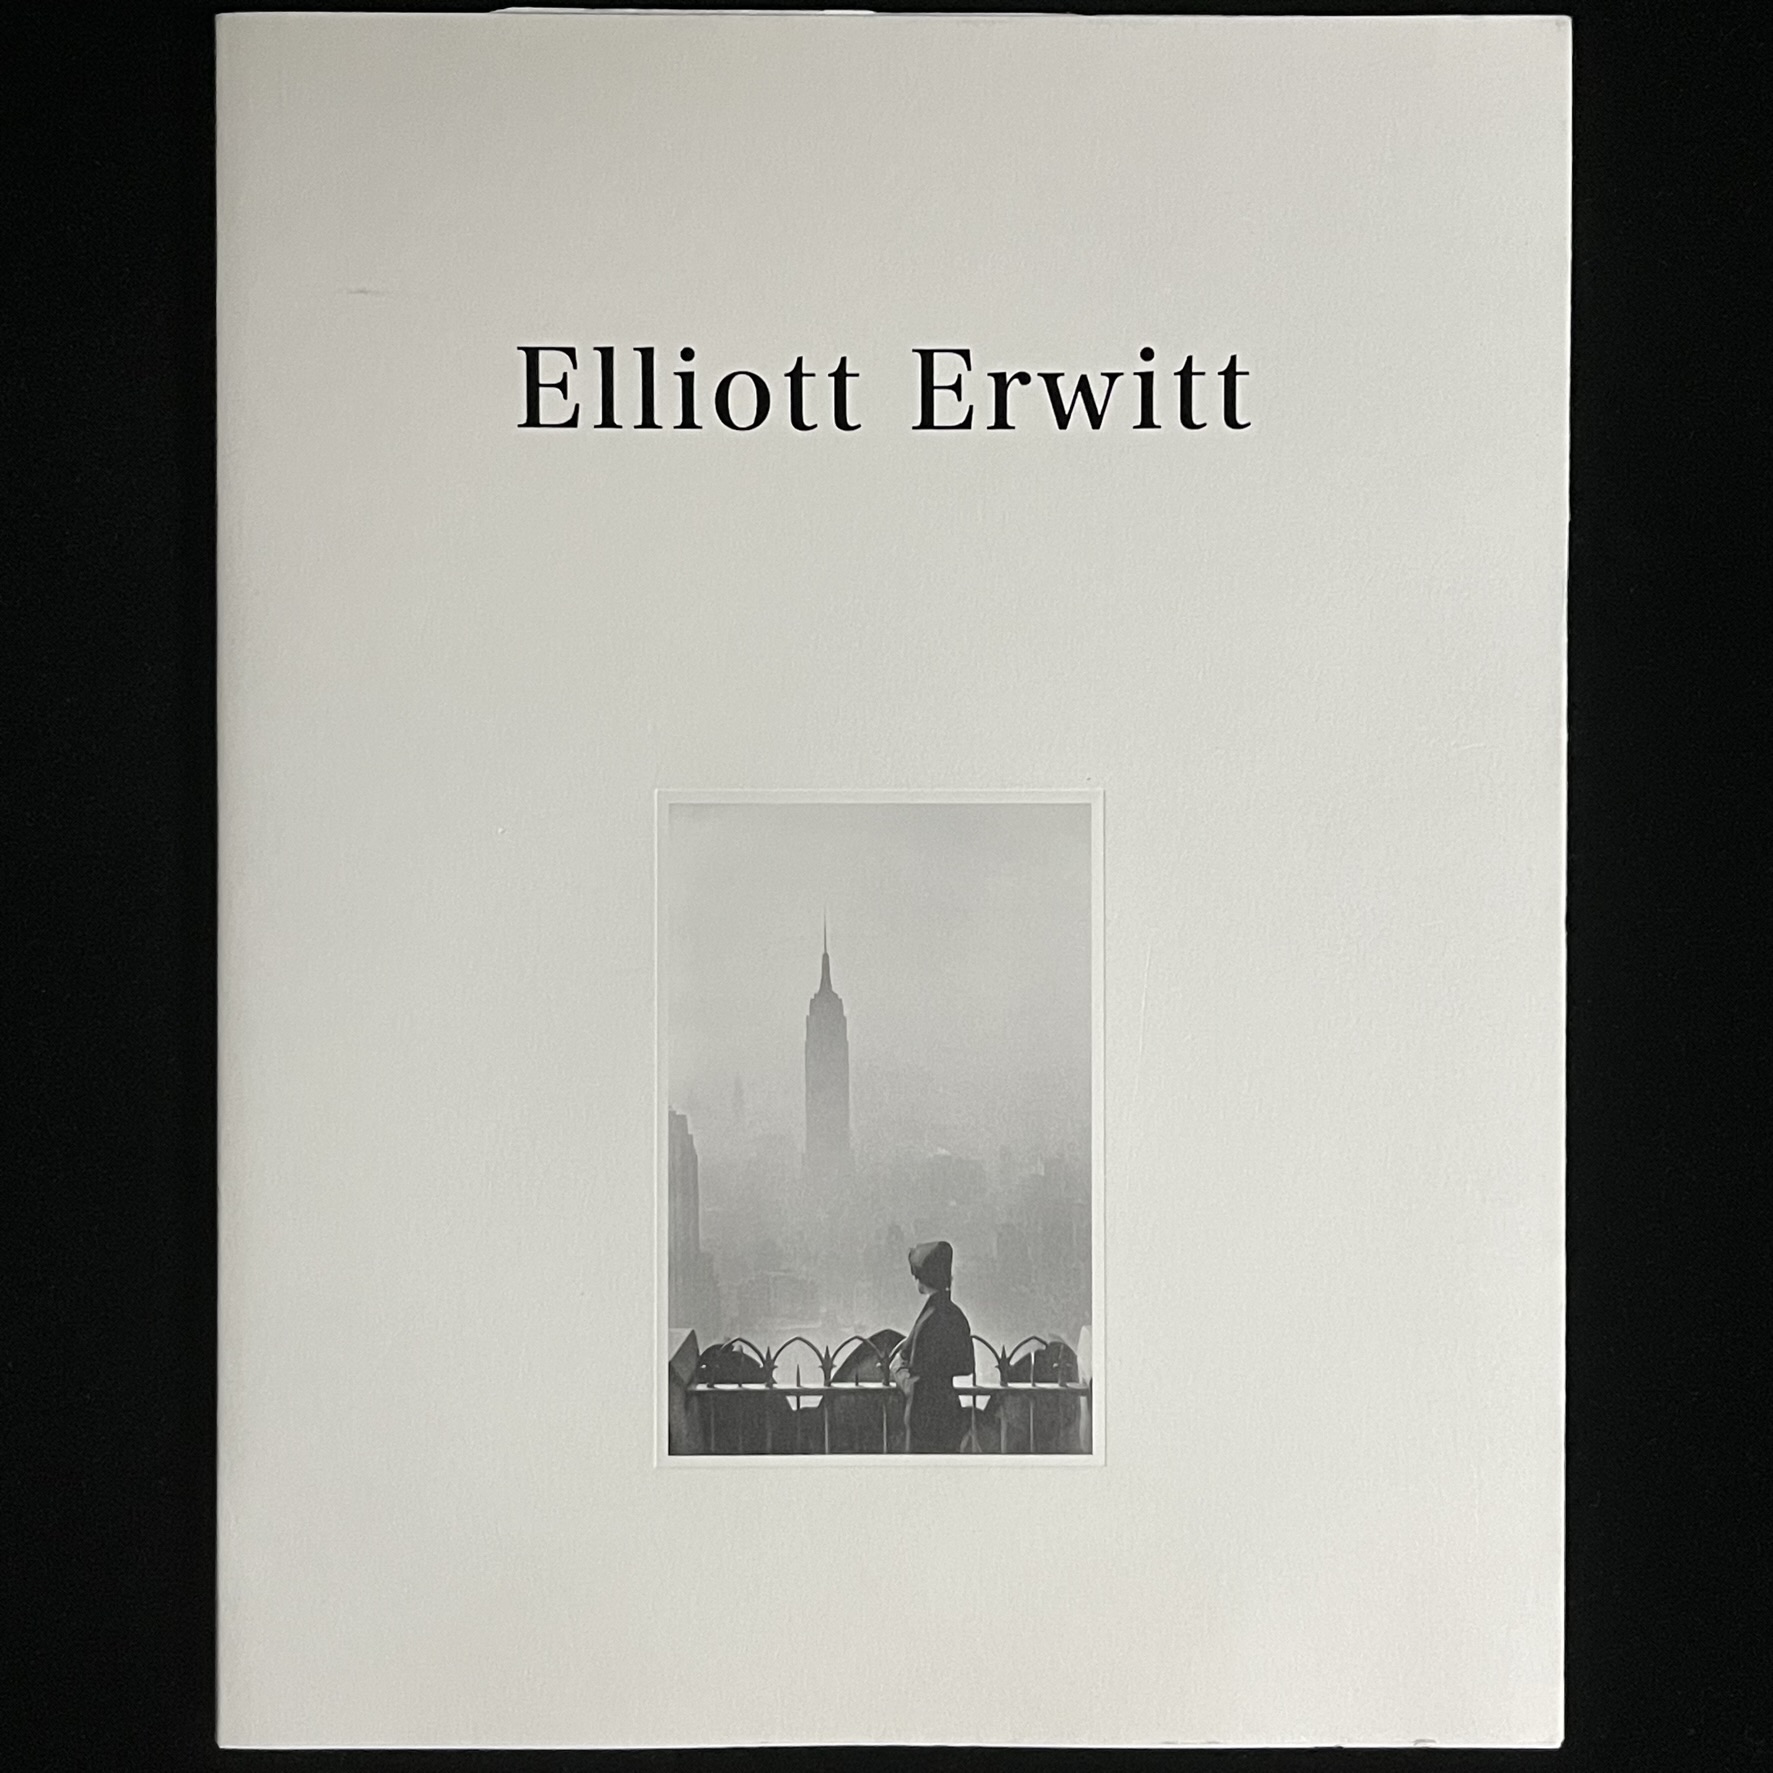 『ELLIOT ERWITT』の写真集の表紙の写真。女性が立つ柵の向こうに霧にかすむエンパイヤ―ステイトビルディングがそびえている写真が載っています。